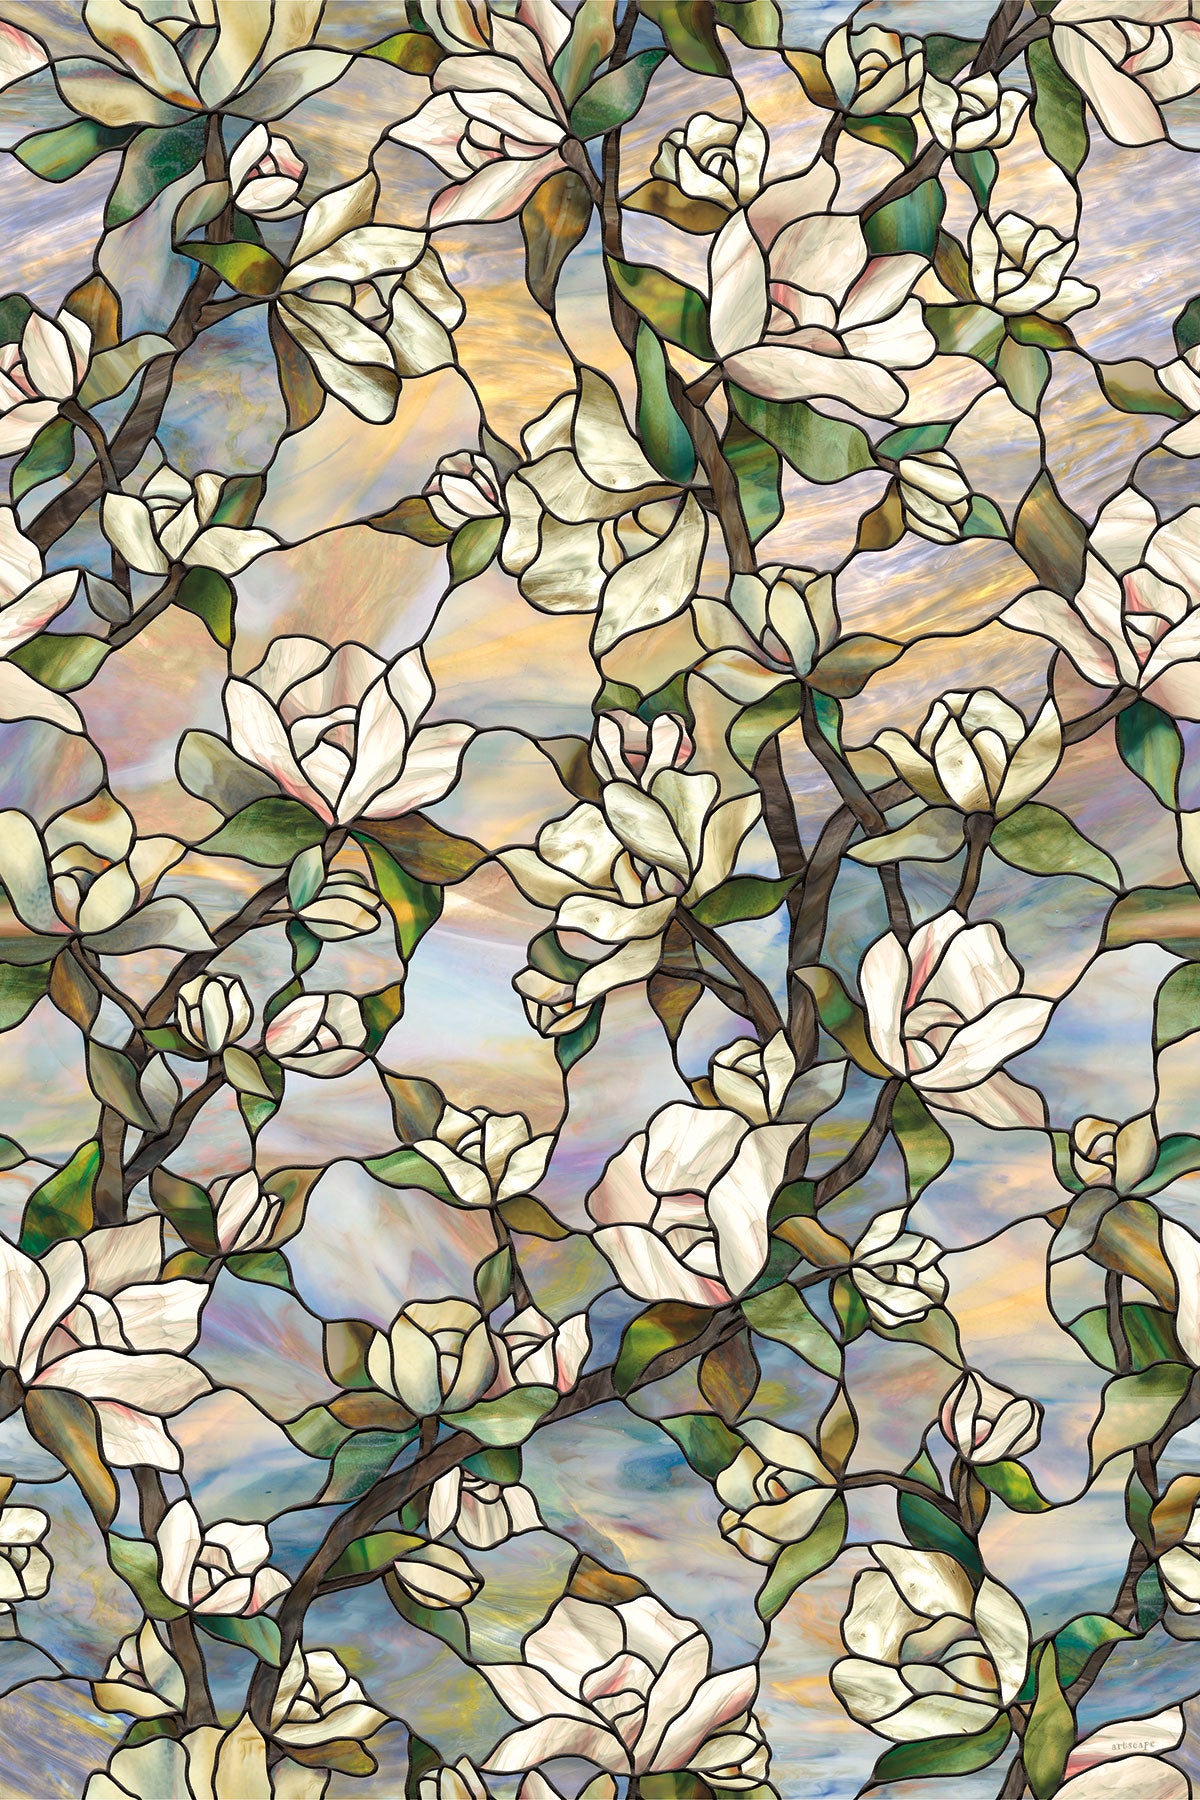 Artscape Star Magnolia  - Decorative Privacy Window Films